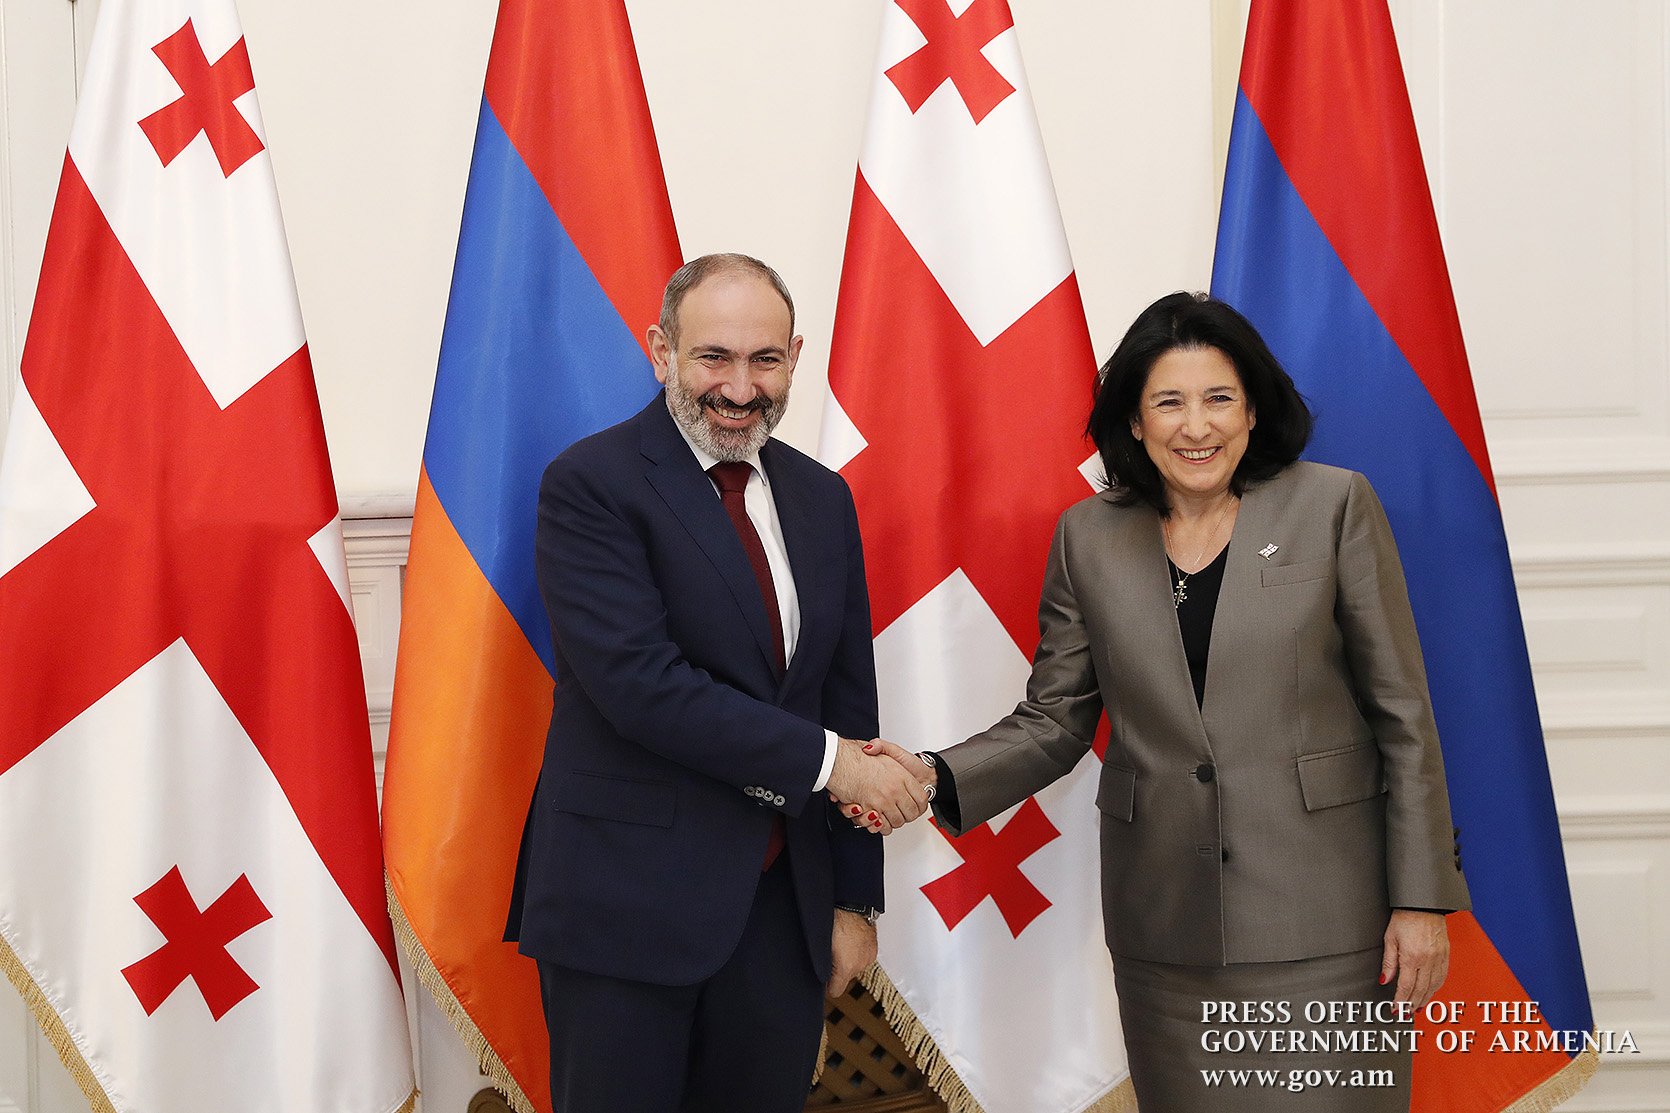 Армяно-грузинские отношения активно развиваются - Пашинян